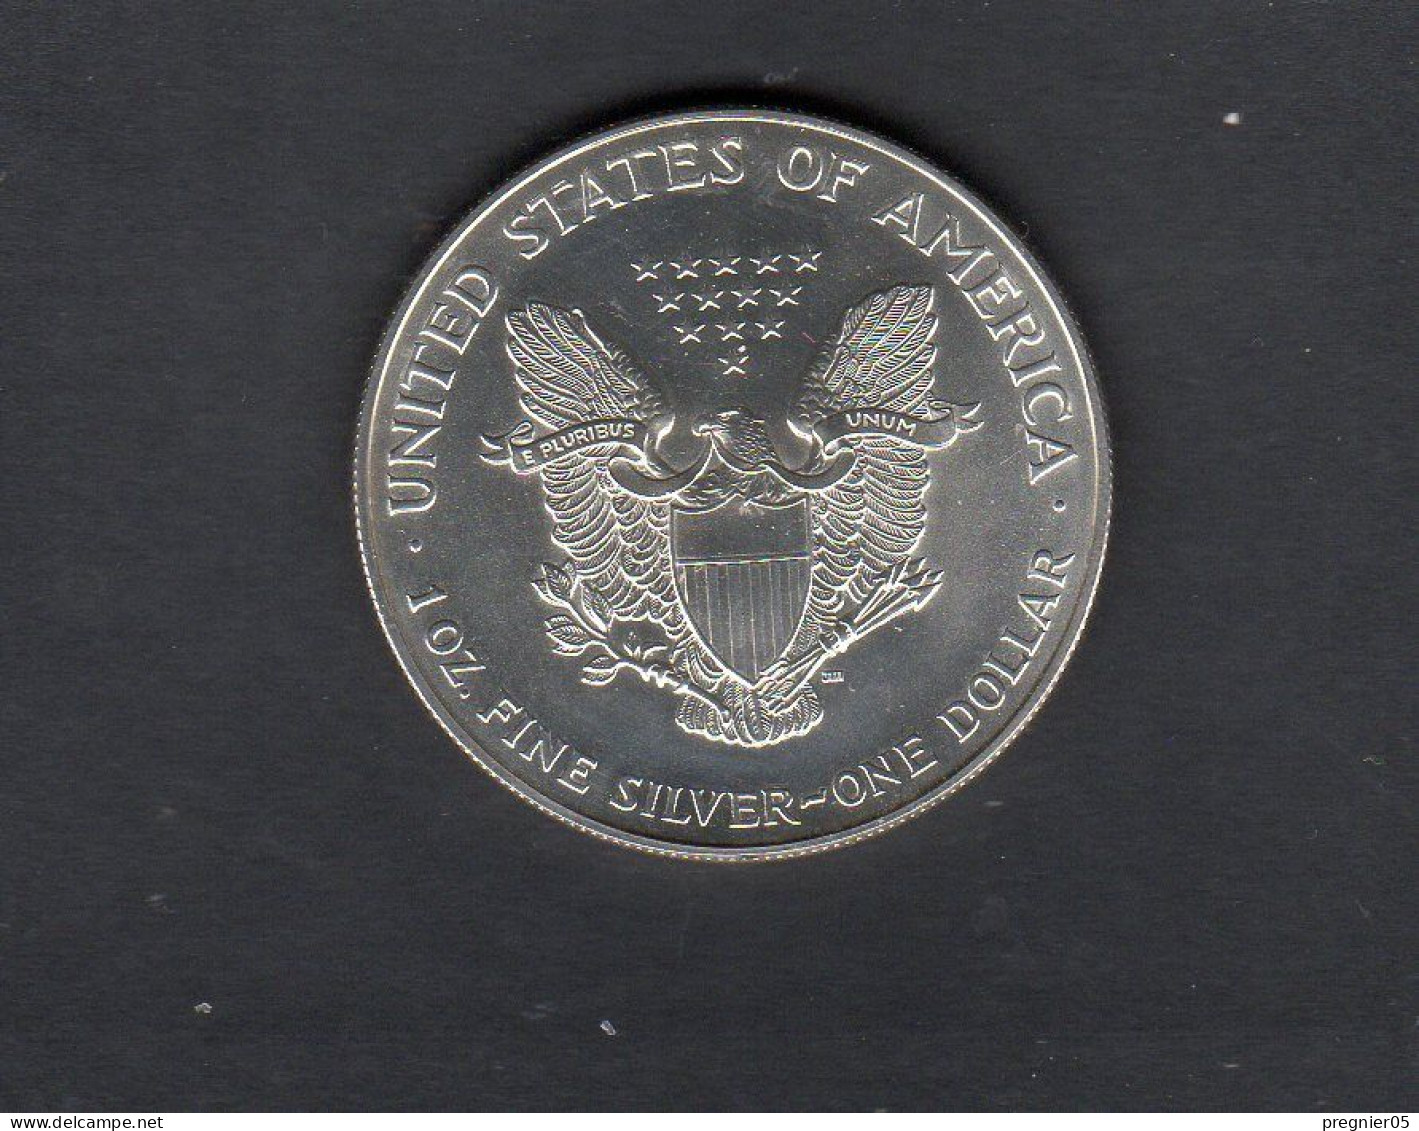 USA - Pièce 1 Dollar Argent American Silver Eagle 1995 FDC  KM.273 - Non Classificati